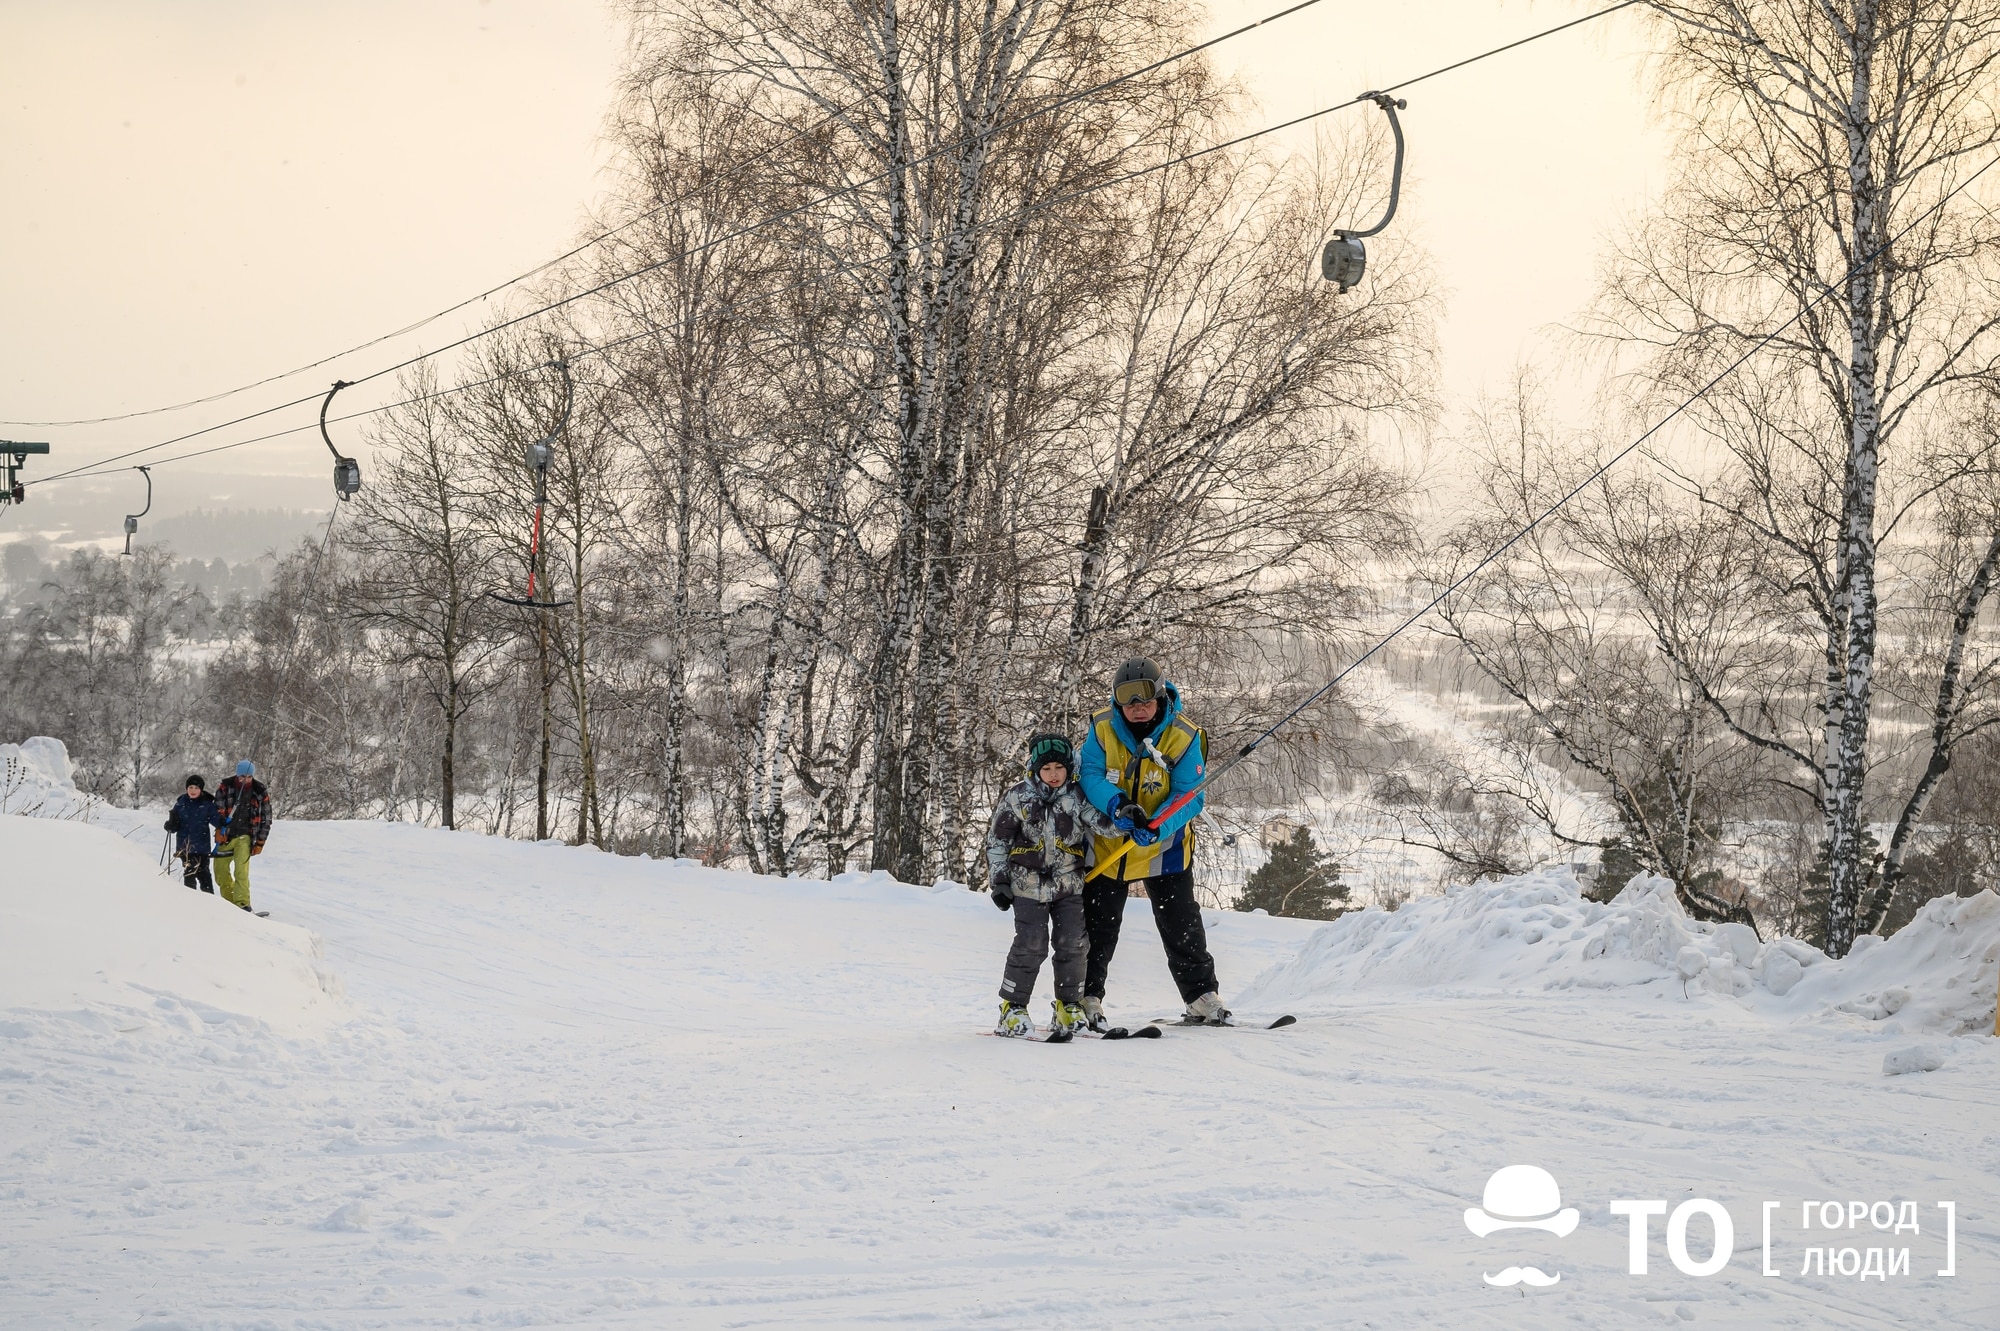 Конкурсы и акции, Томские новости, лыжи акции провоз проезд новый год зимние виды спорта покататься на лыжах интересные новости Томска В декабре томичи смогут бесплатно провозить сноуборды и лыжи в пригородных поездах